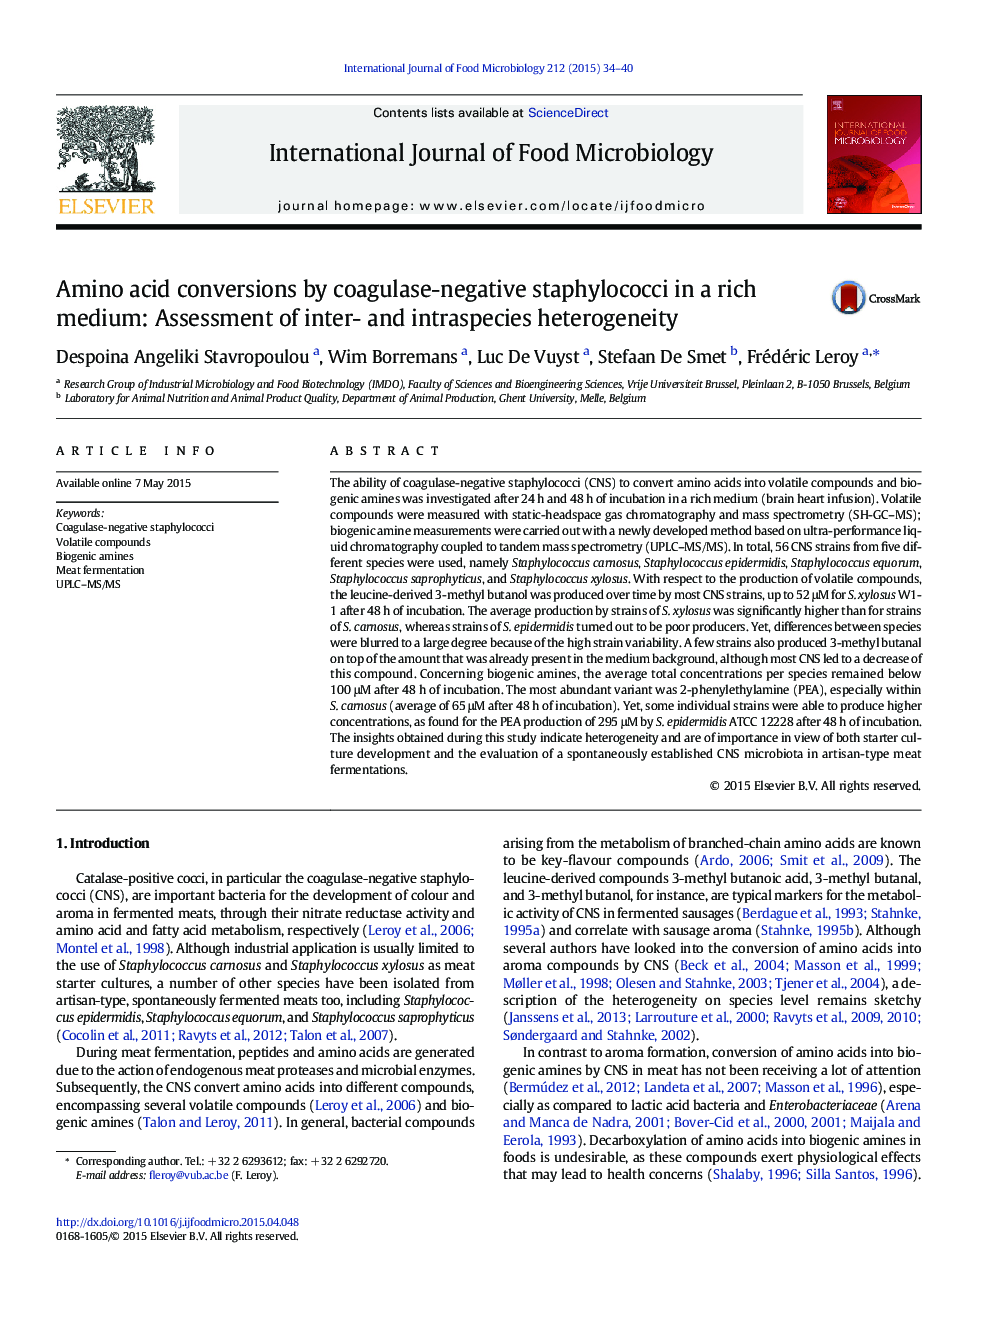 تبدیل آمینو اسید توسط استافیلوکوک های کواگولاز منفی در یک محیط غنی: ارزیابی ناهمگونی بین و داخل گونه 